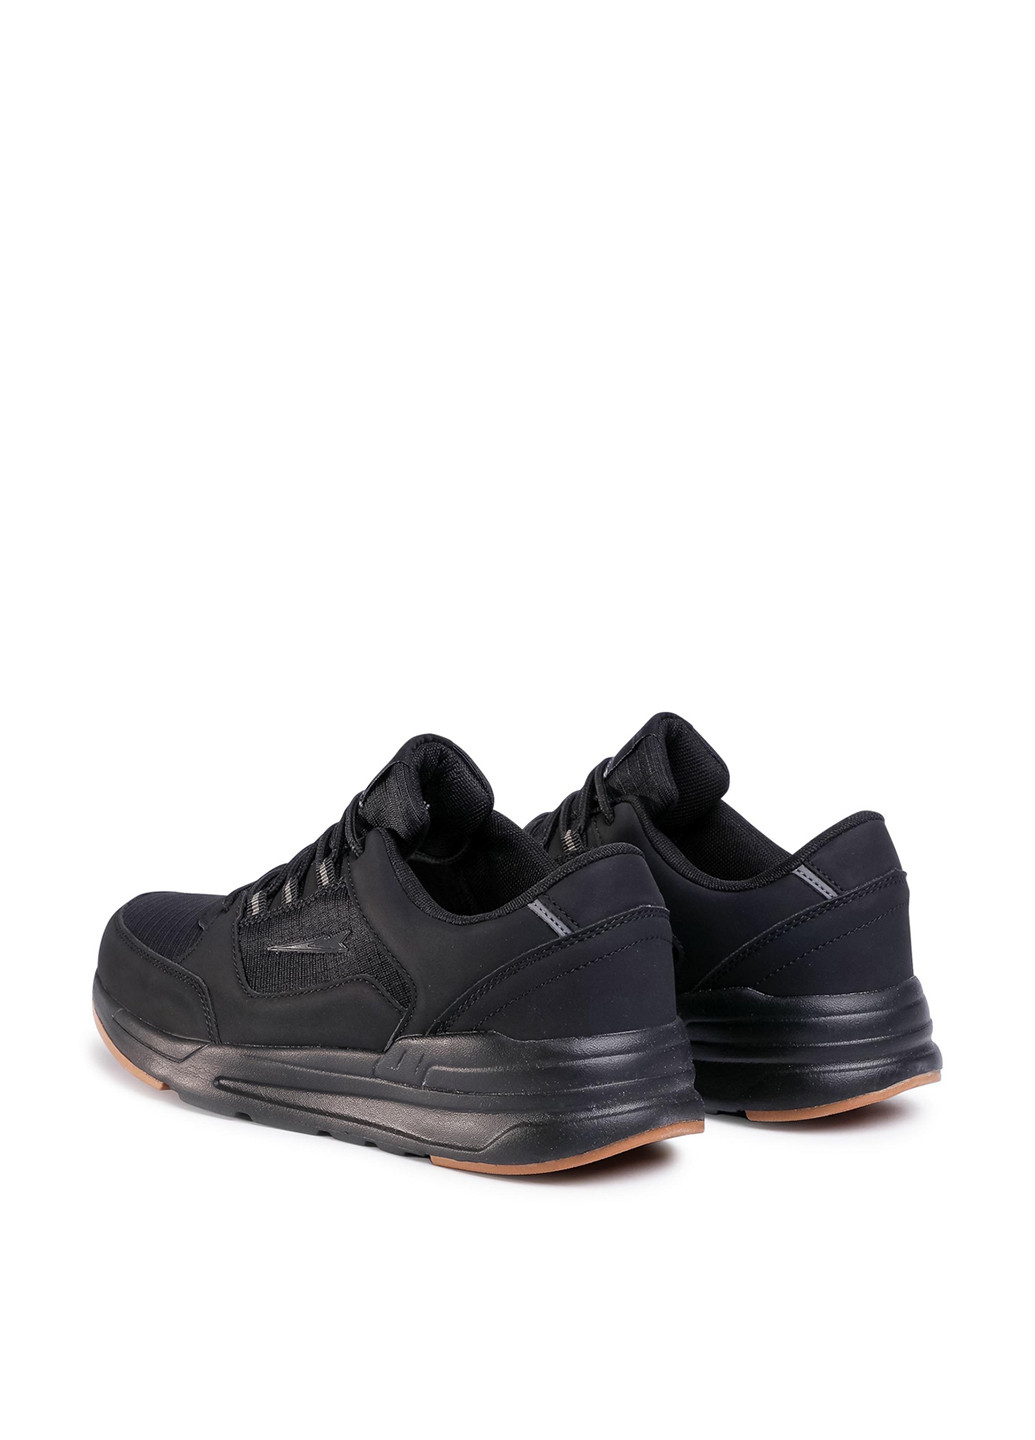 Черные демисезонные кросівки mp40-9865w Sprandi